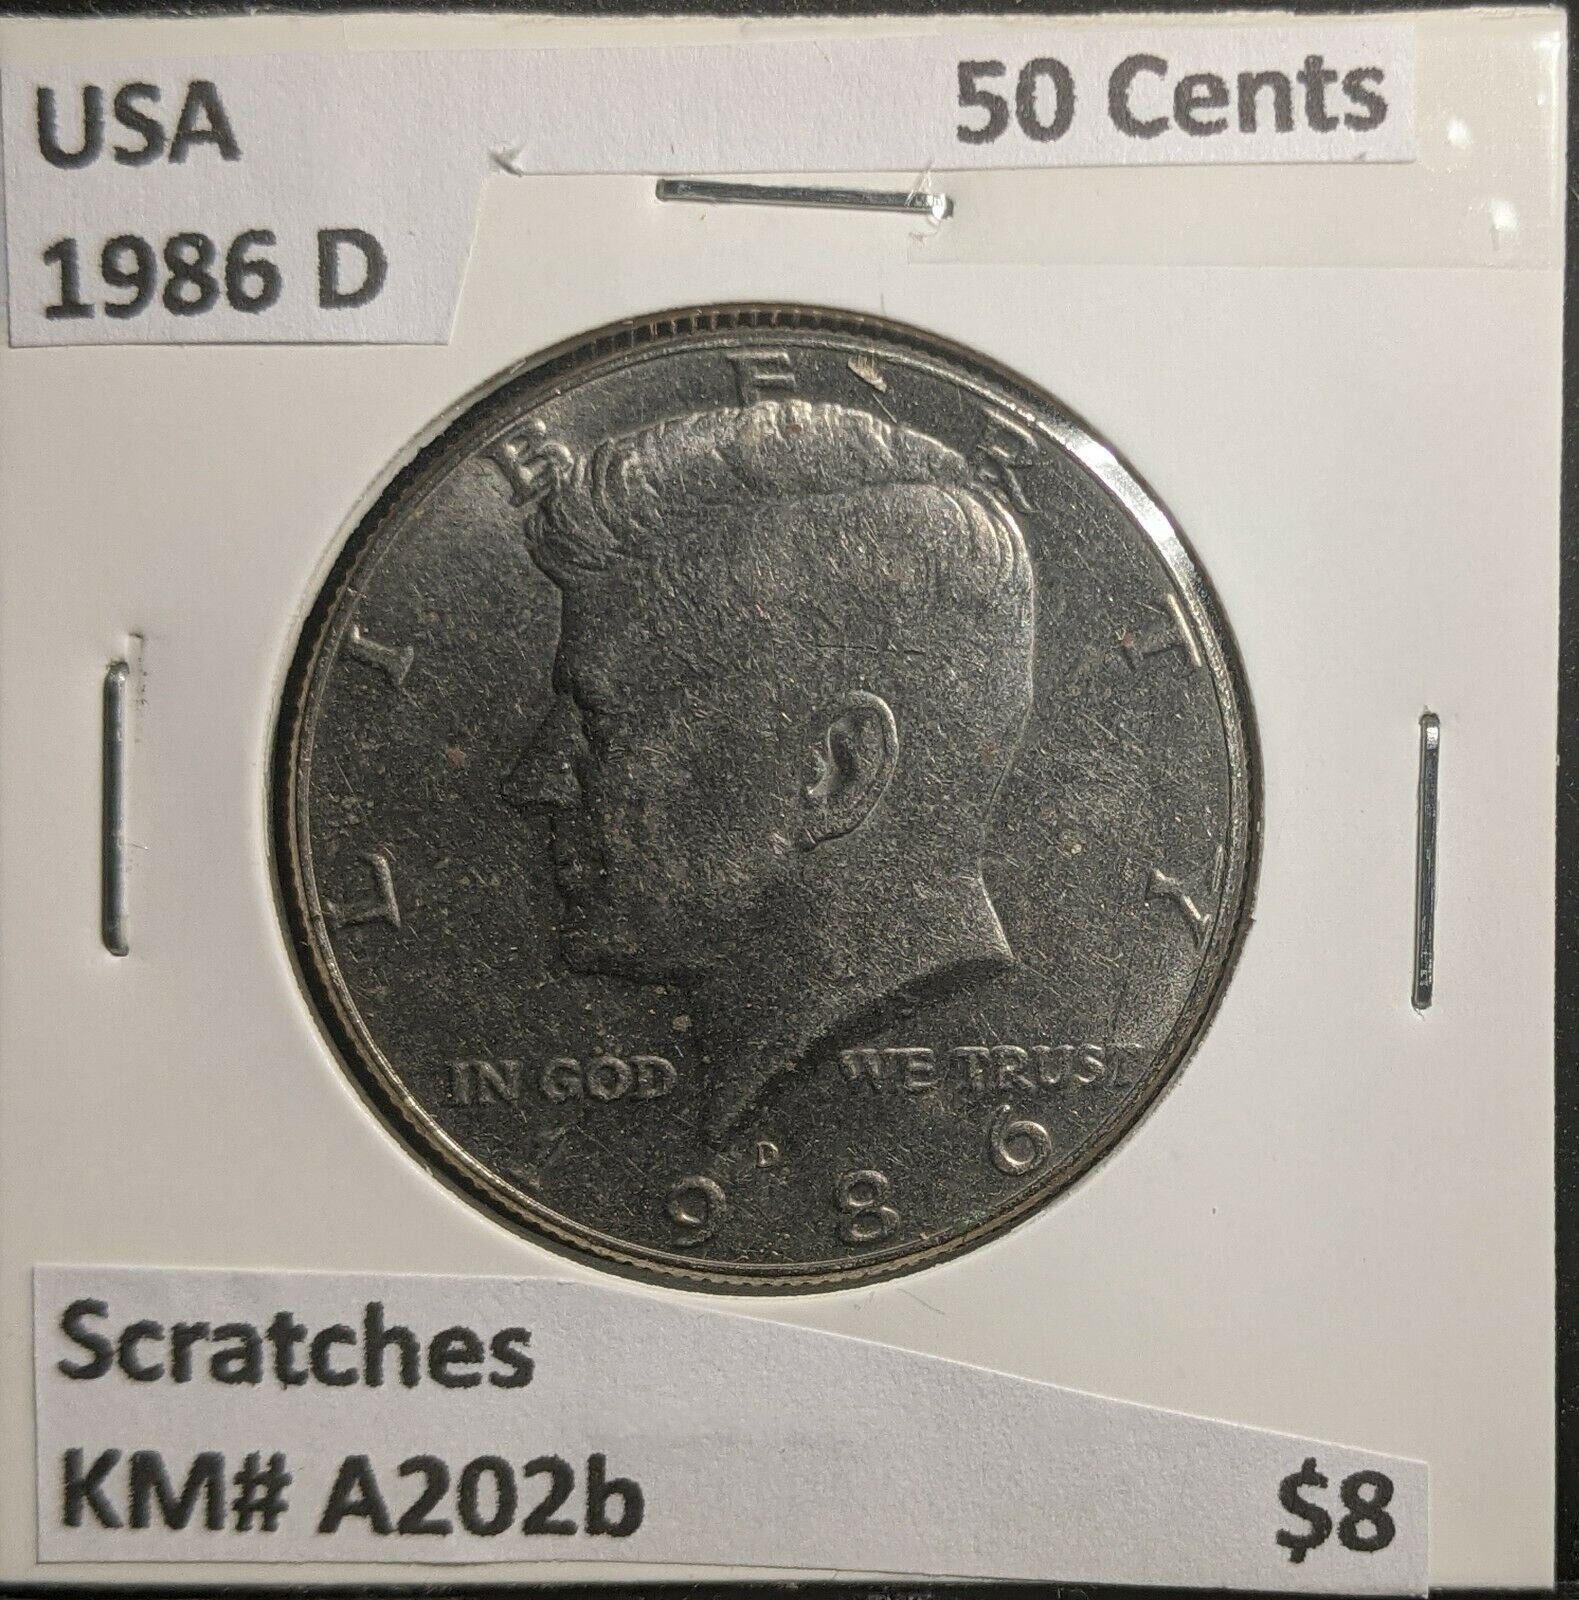 USA 1986 D 50 Cents KM# A203A Scratches #291 3A